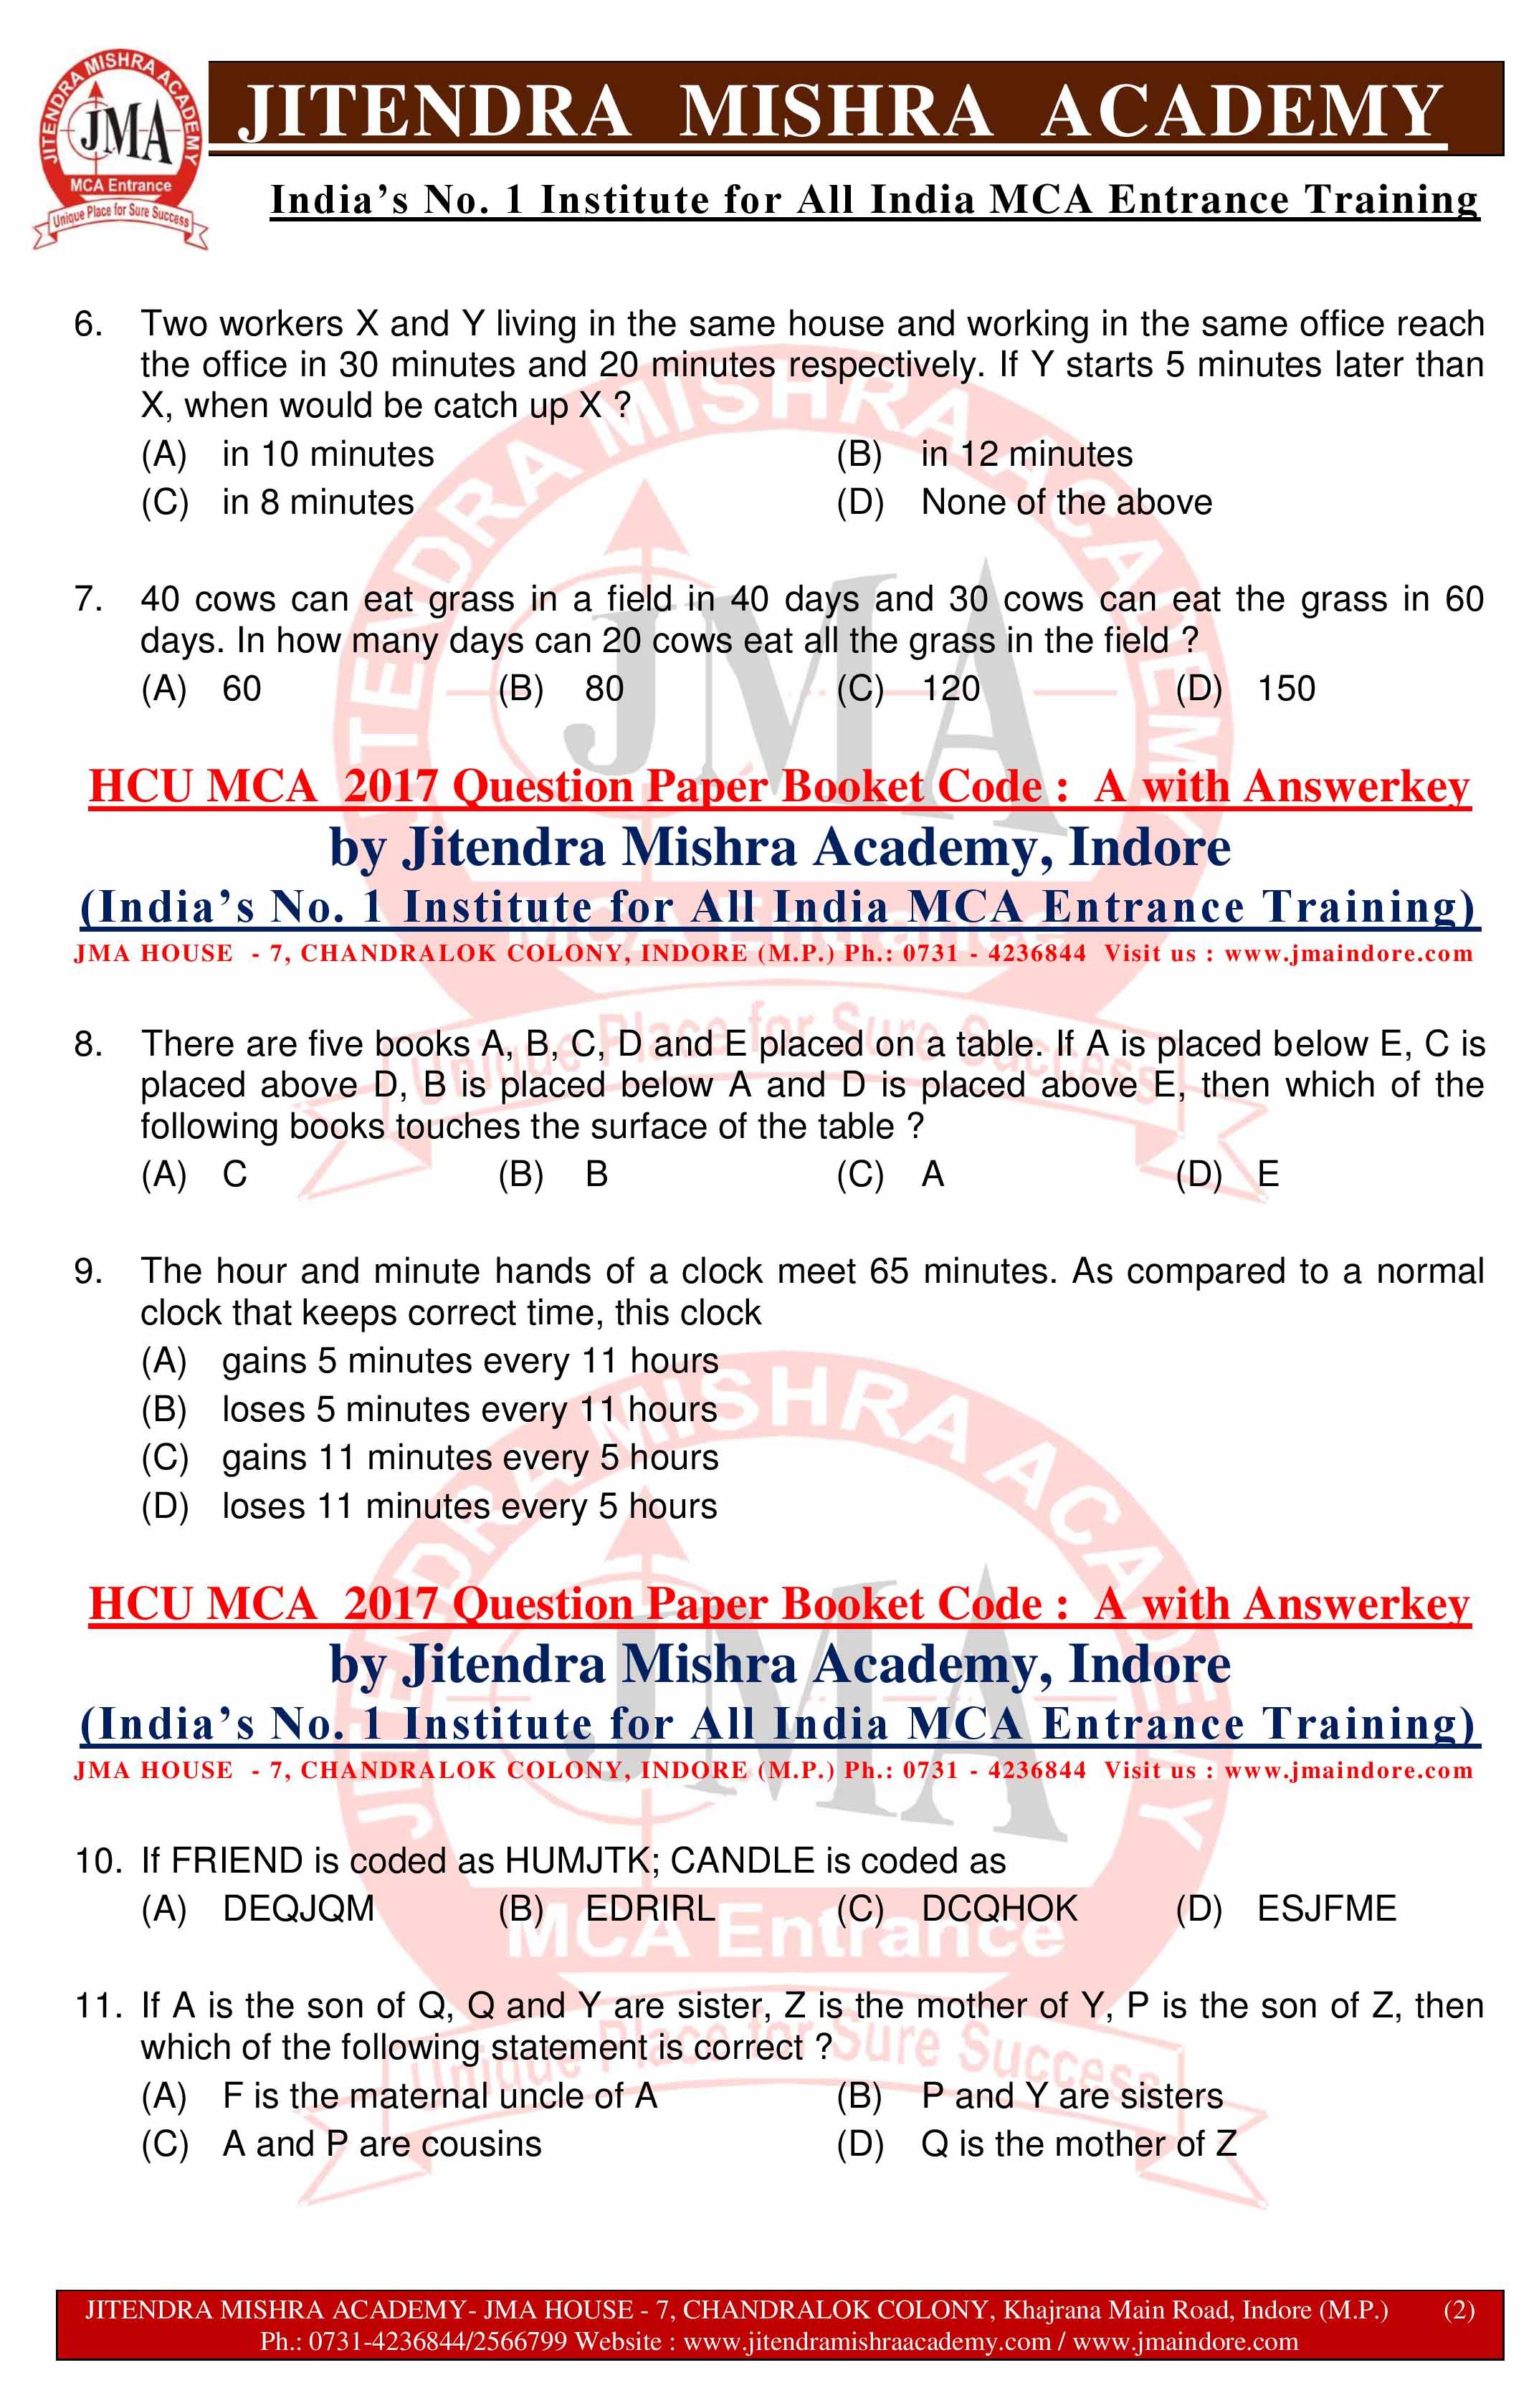 HCU MCA 2017 QUESTION PAPER -SET - A--page-002